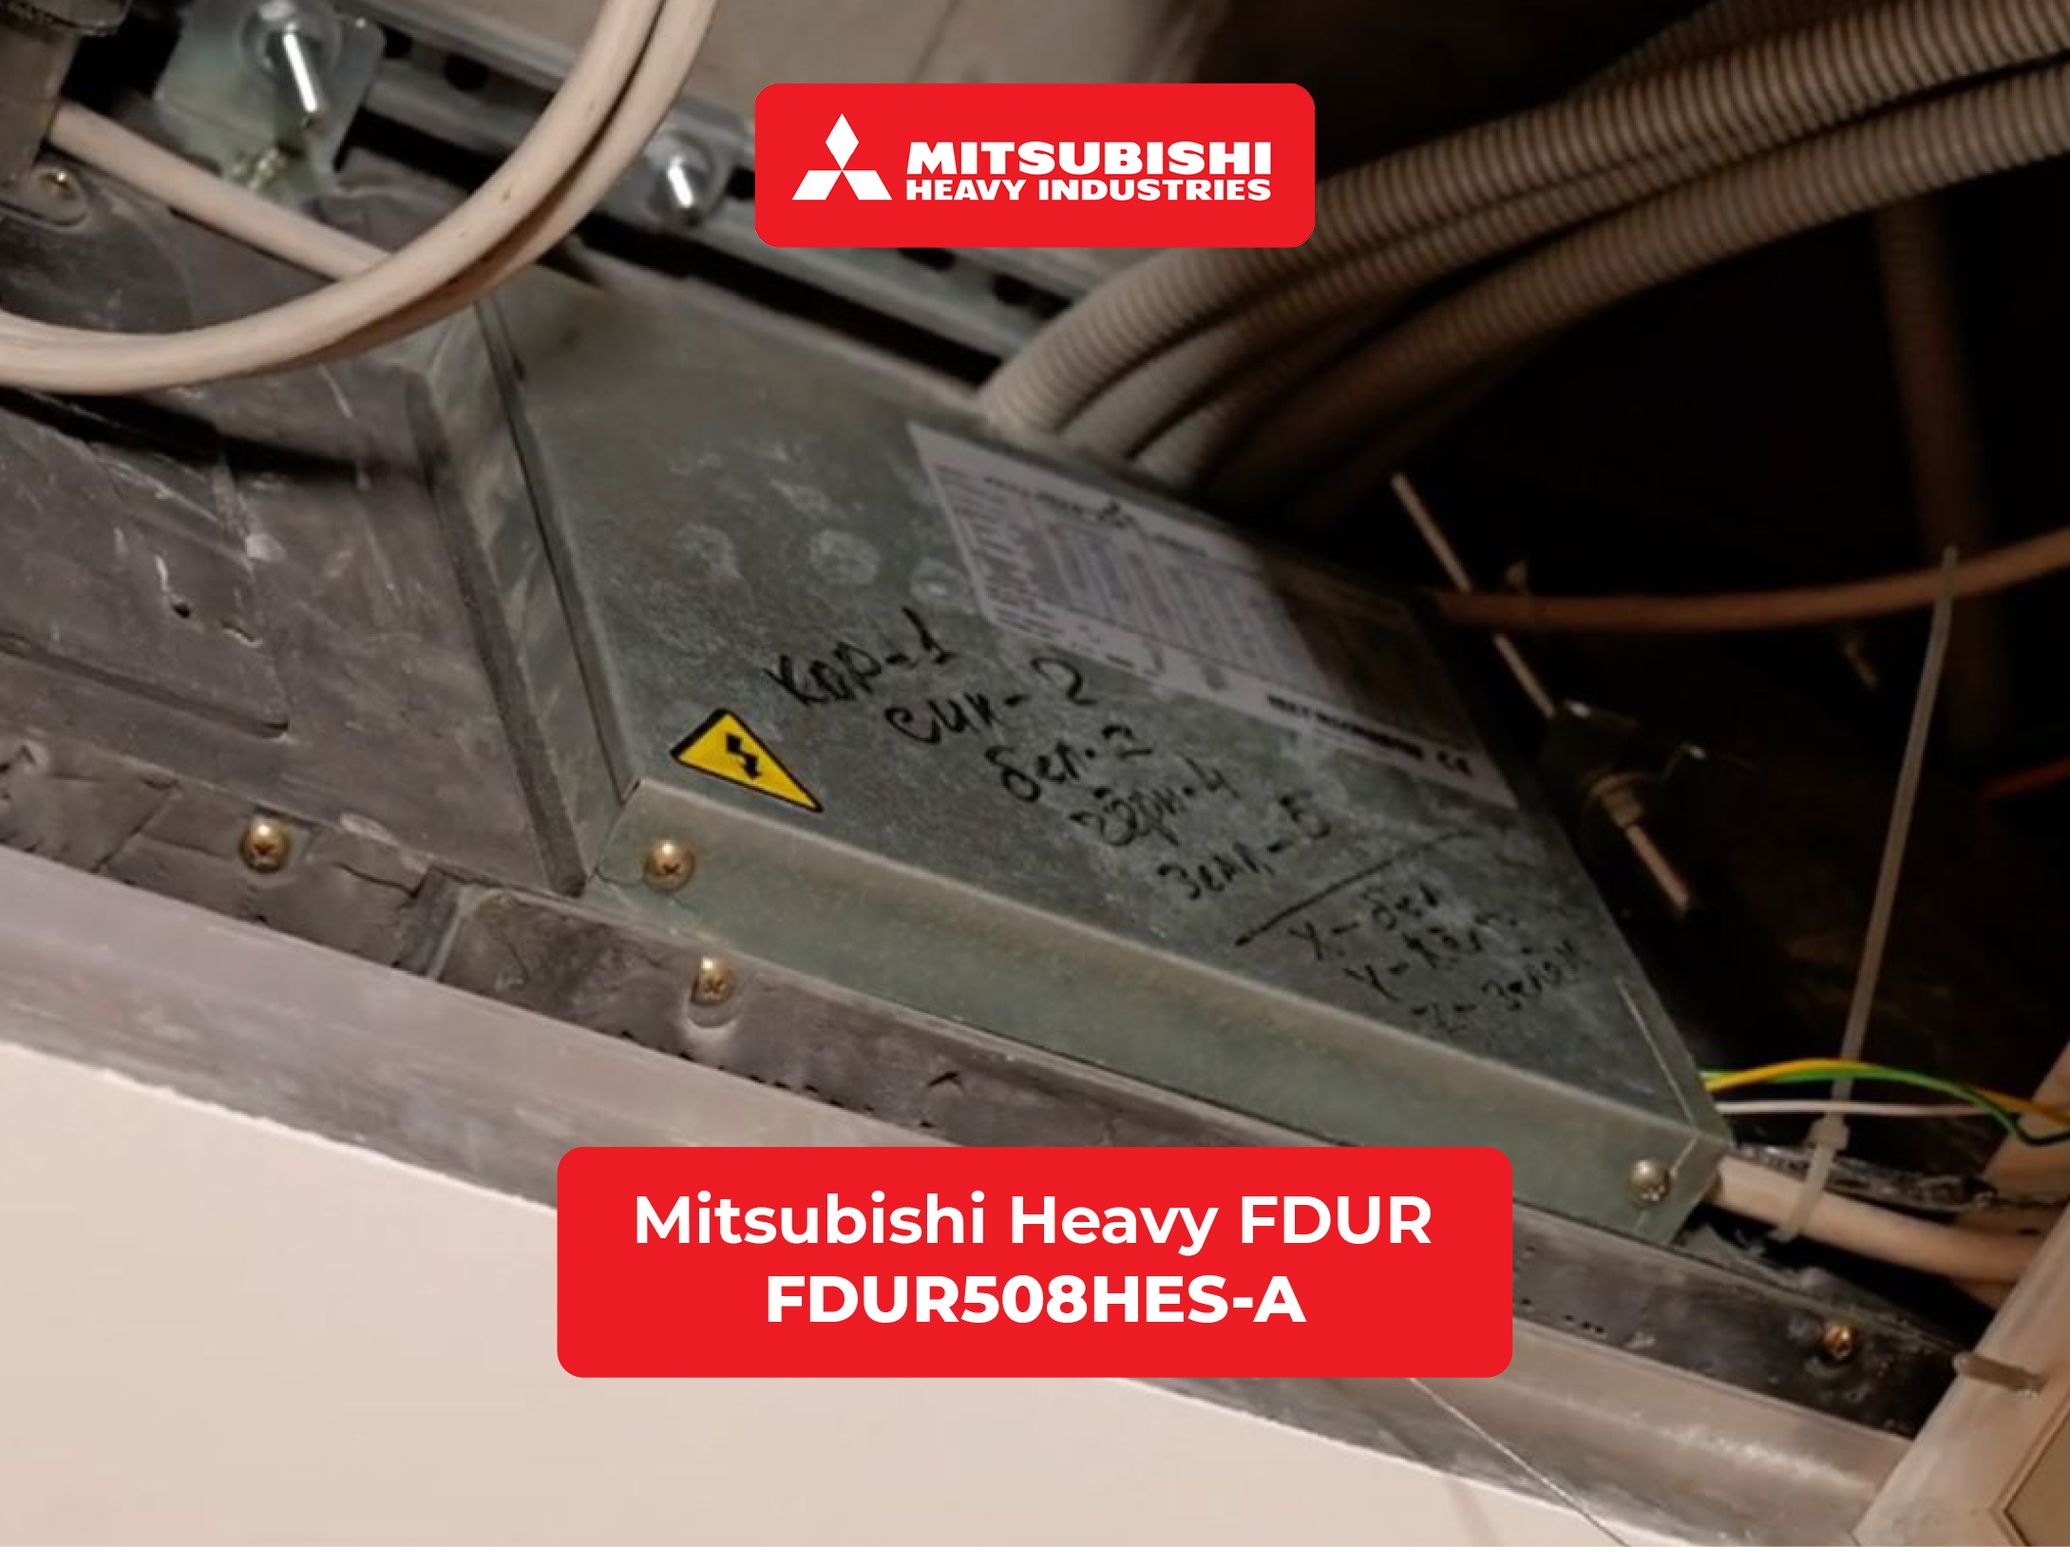 Подключаем канальный полупромышленный кондиционер Mitsubishi Heavy FDUR508HES-A  с разъемом XYZ в умный дом WirenBoard через шлюз ONOKOM MH-8-MB-B